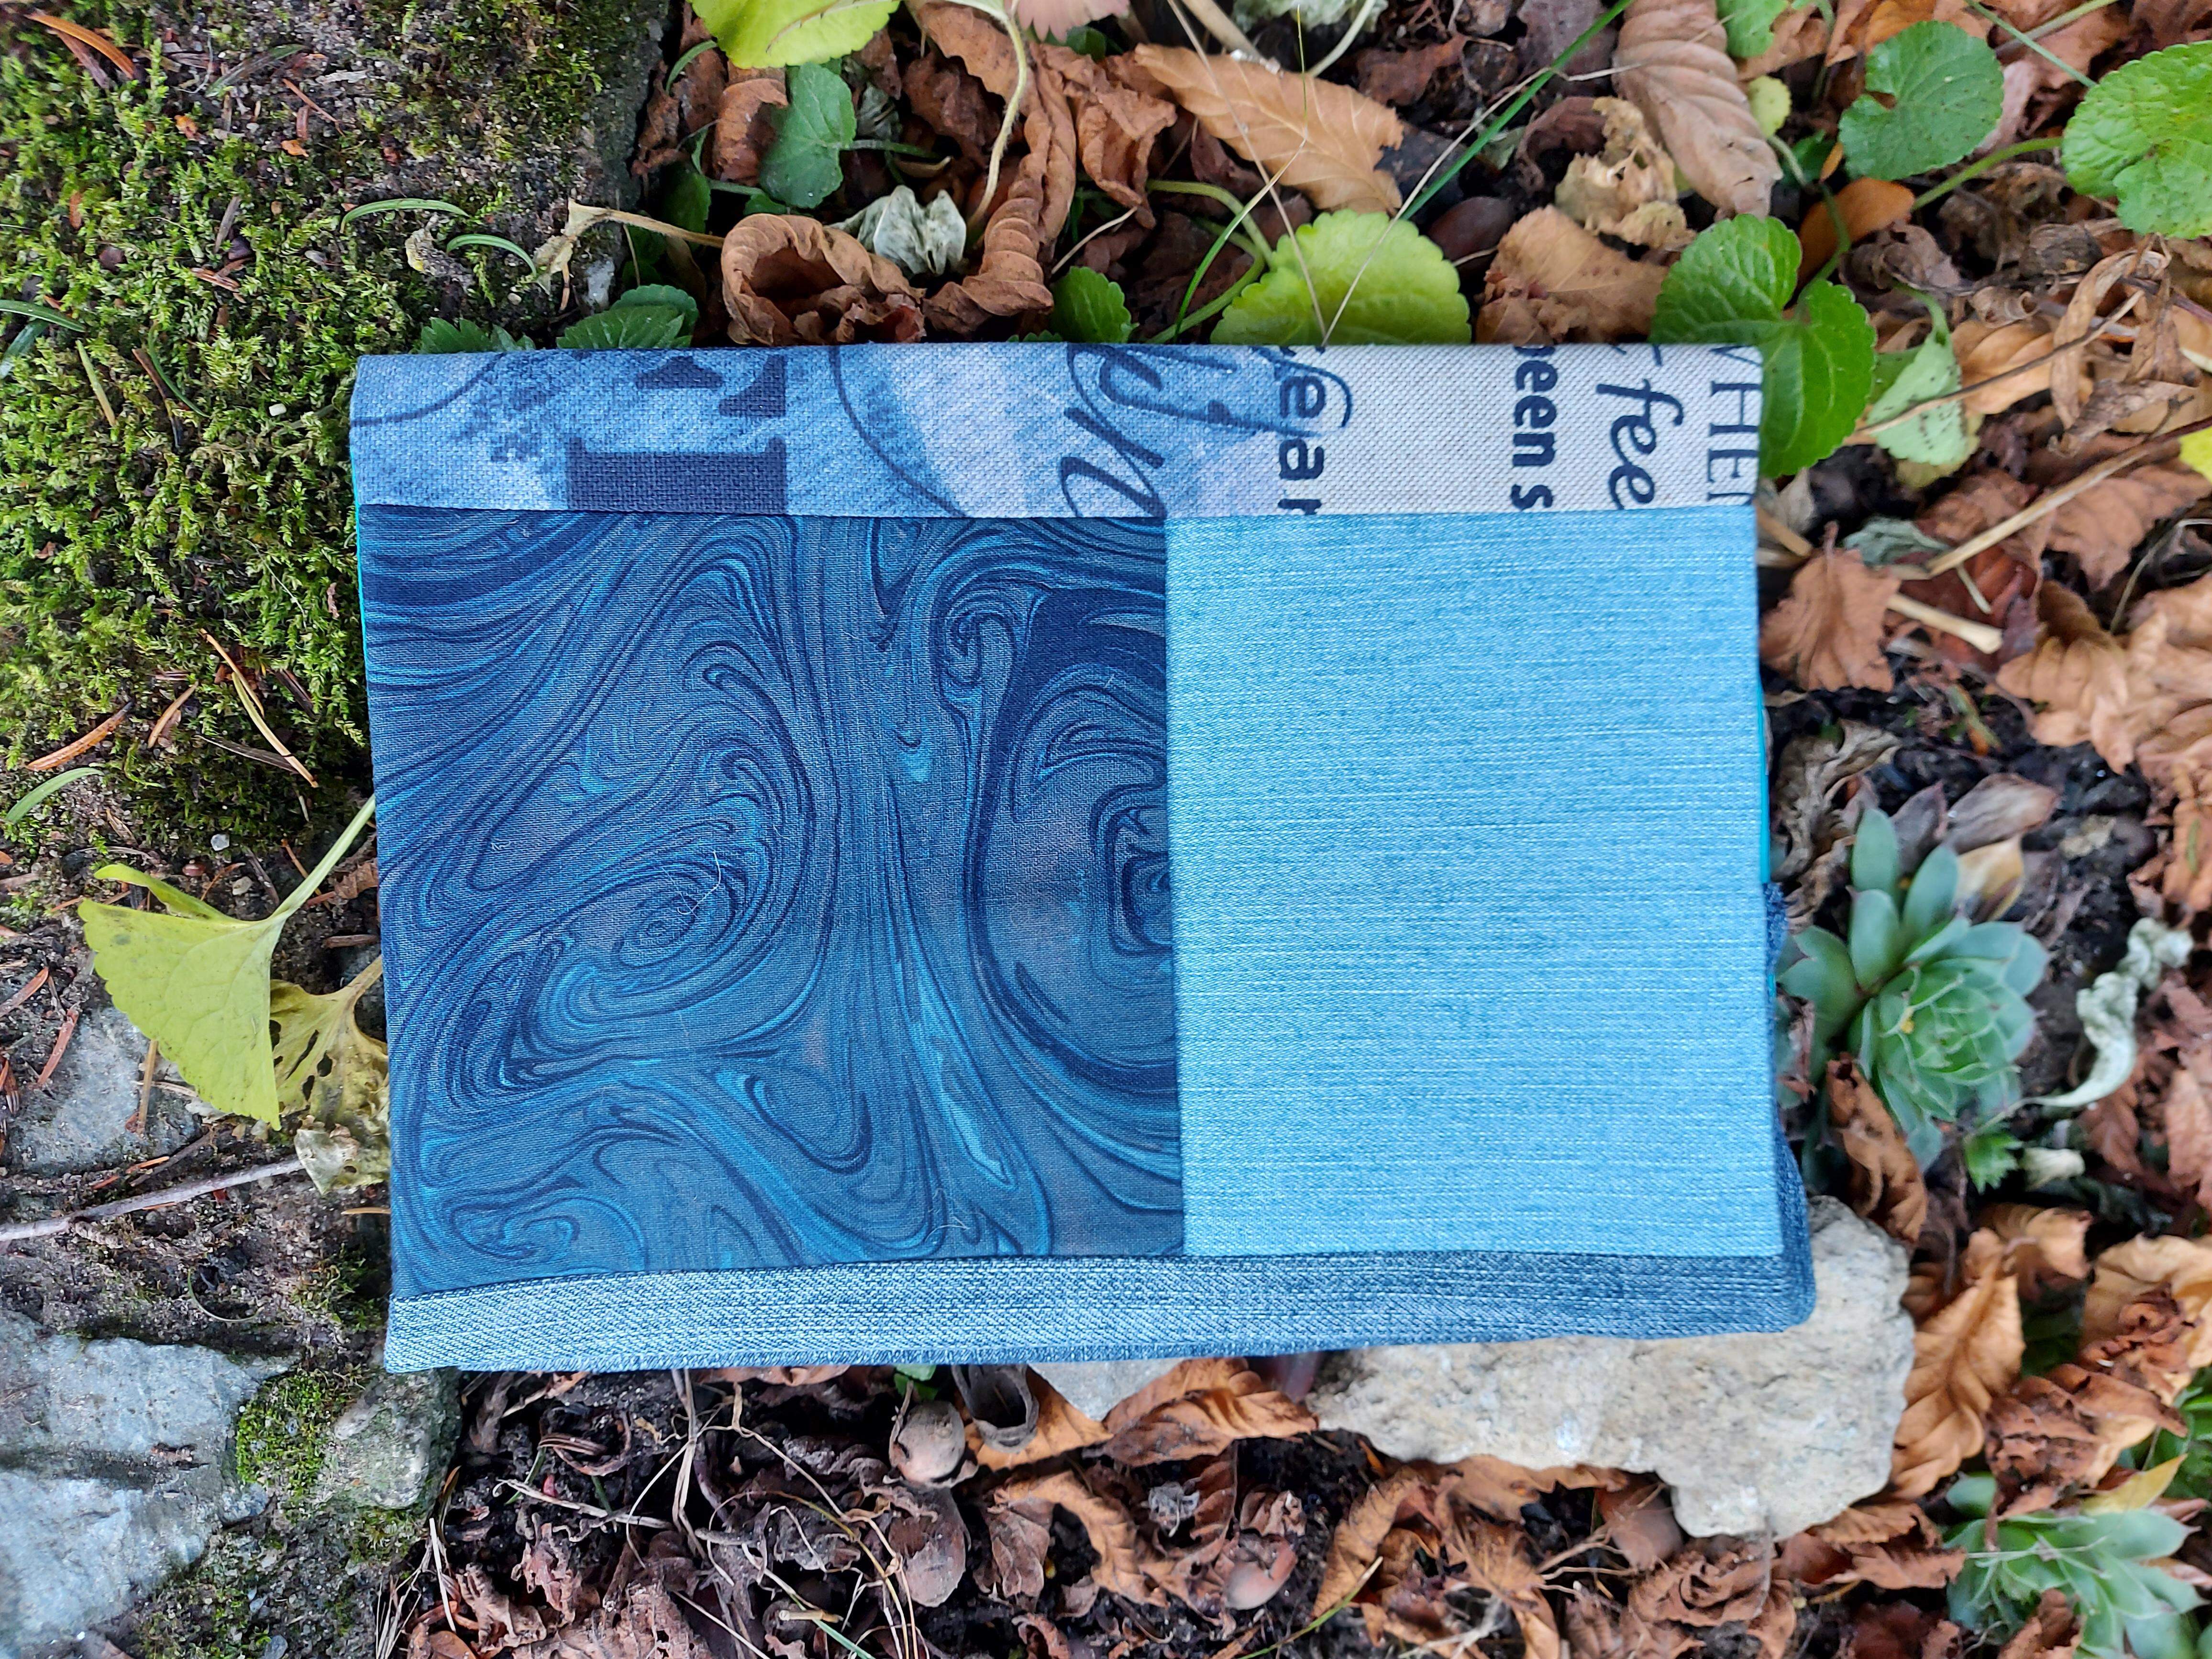 Látkový obal na knihu - 50 odtieňov modrej